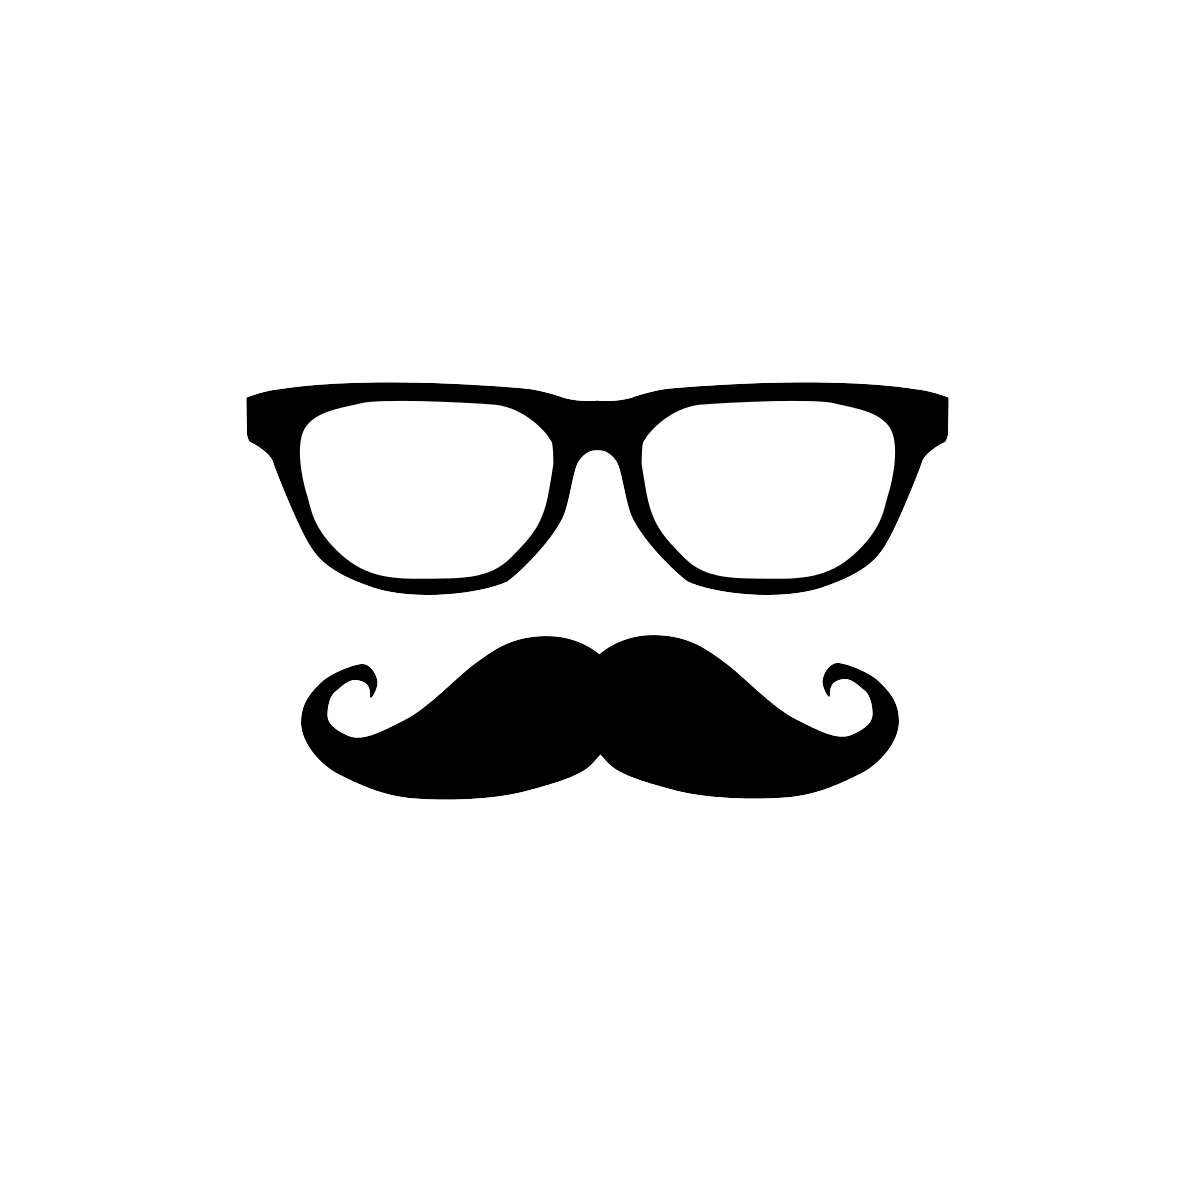 Mustache sunglass frame